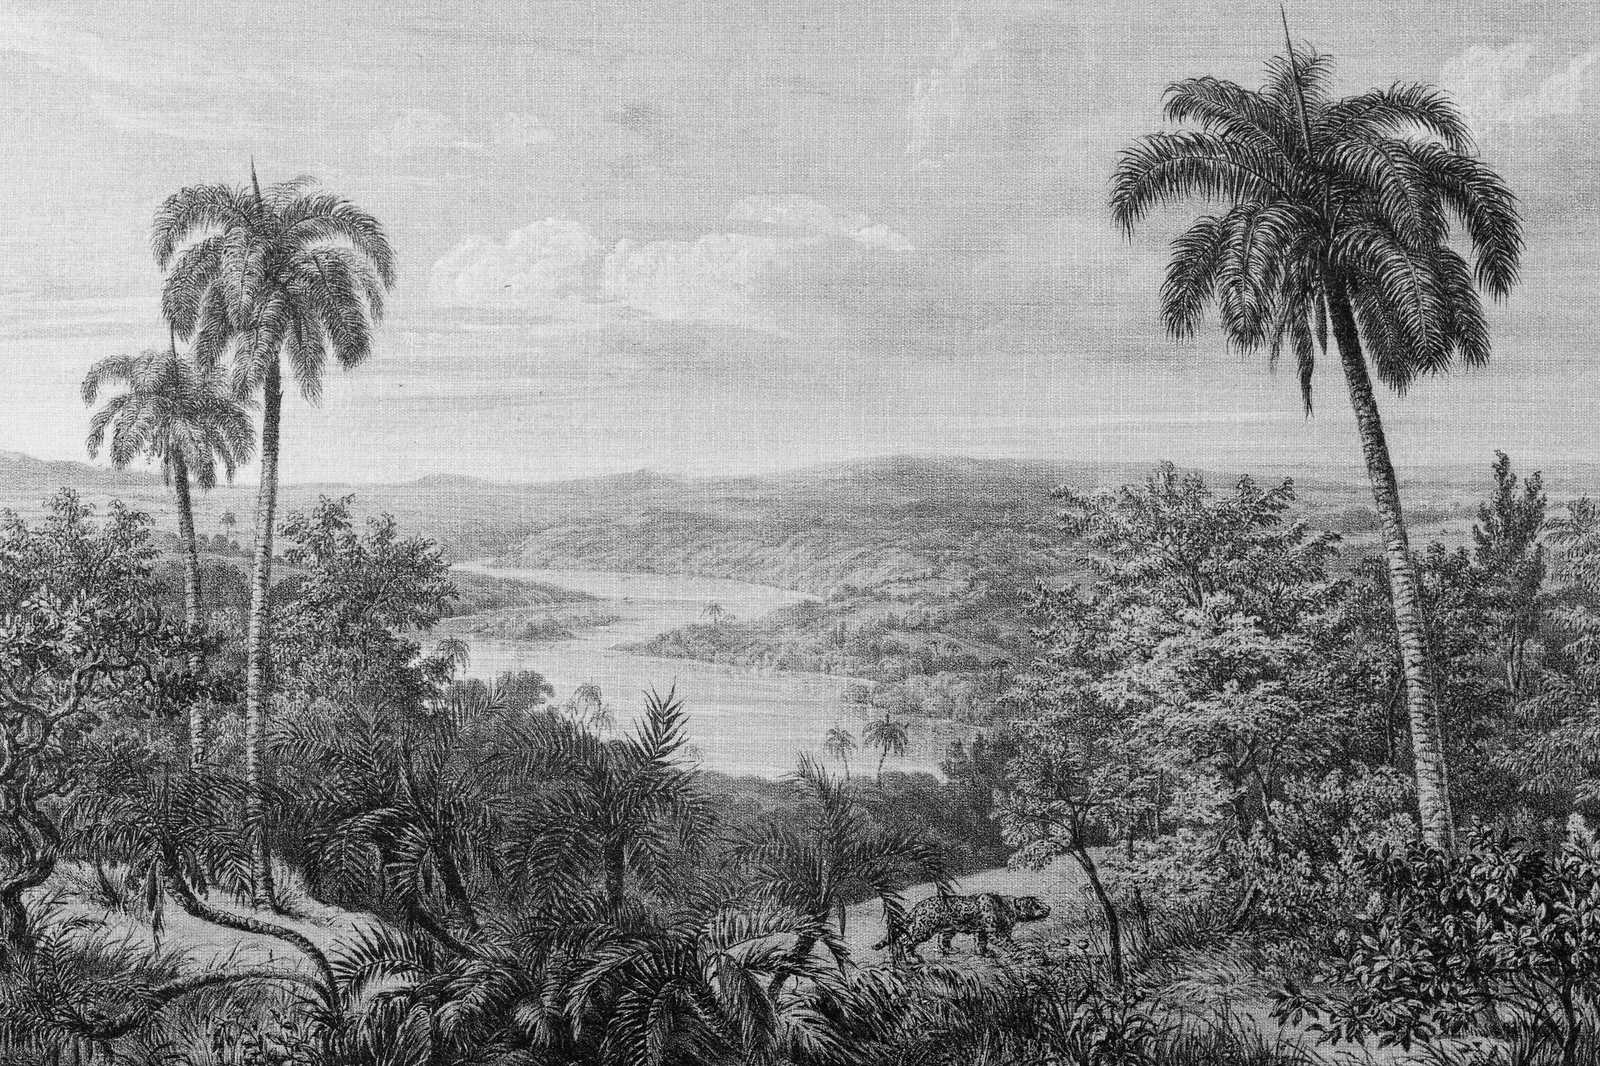             Quadro su tela Vista della foresta pluviale con ottica in lino - 0,90 m x 0,60 m
        